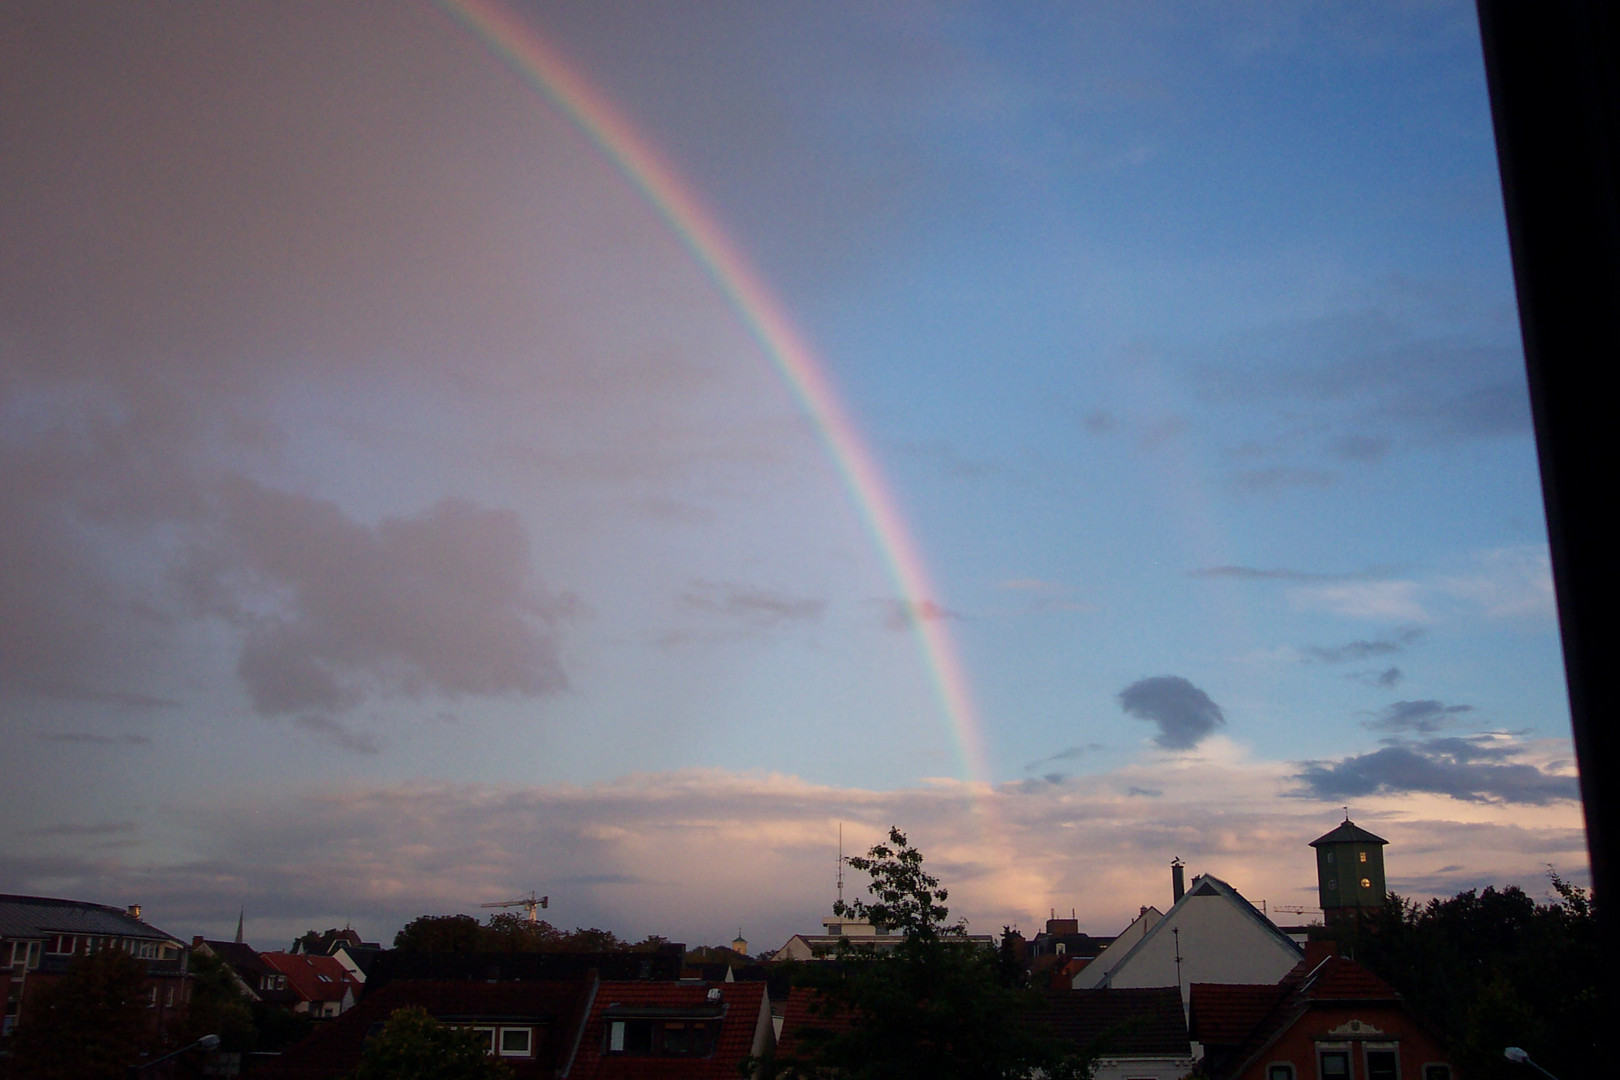 Regenbogen mit Goldtopf in Bremen-Nord